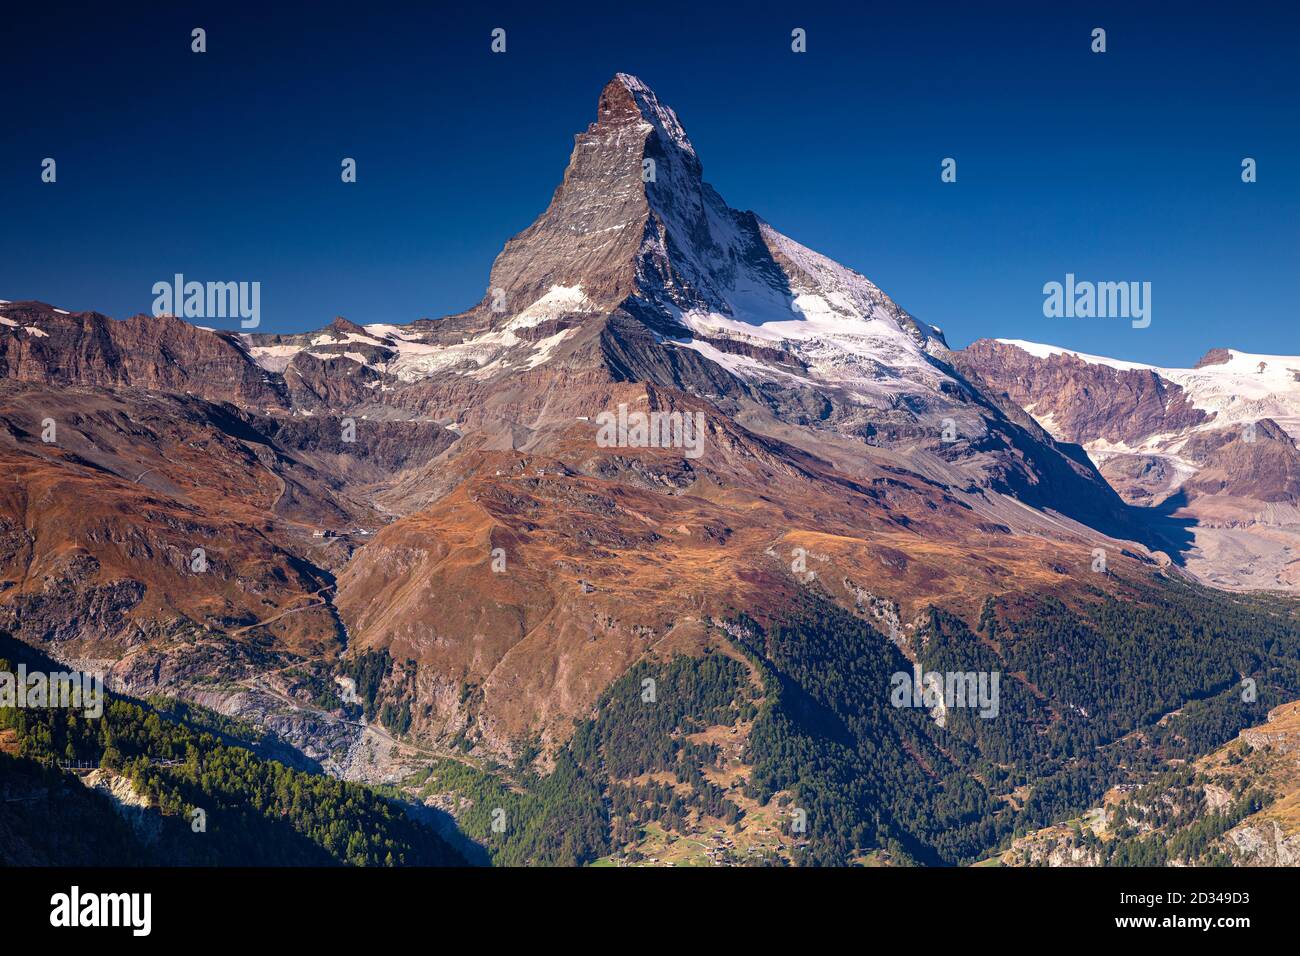 Cervino, Alpi svizzere. Immagine paesaggistica delle Alpi svizzere con il Cervino durante la bella alba autunnale. Foto Stock